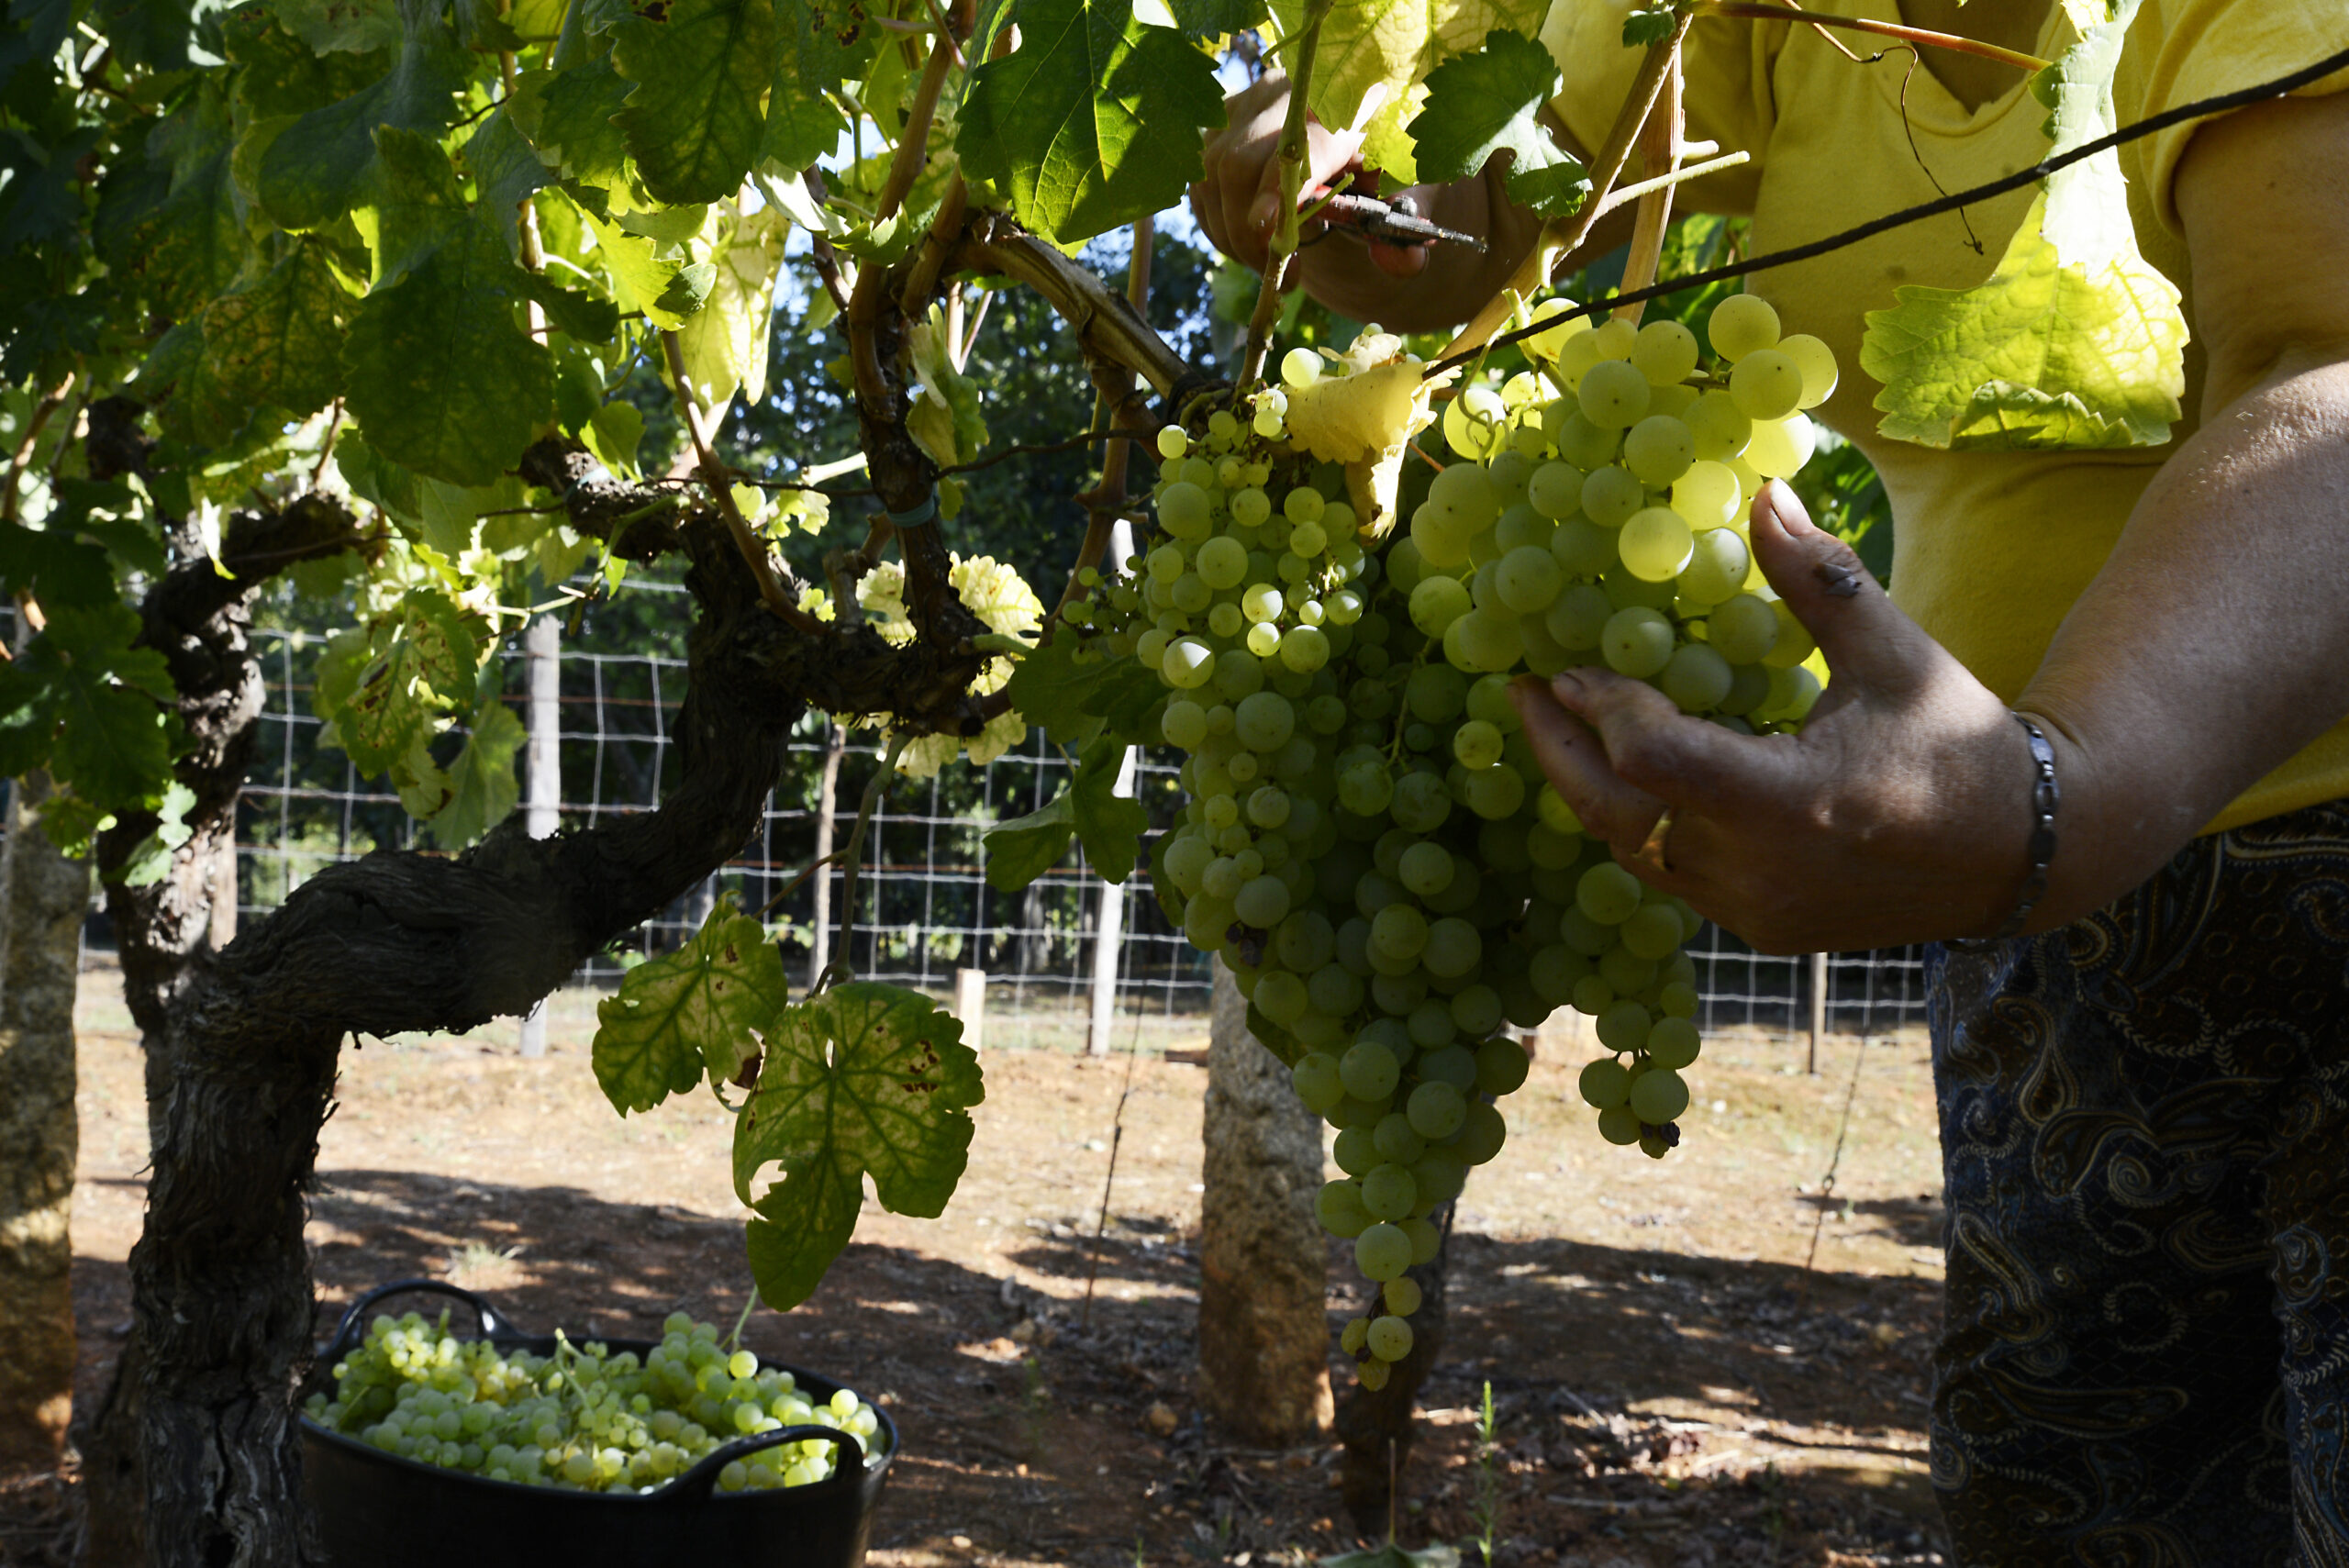 Economia.- Spagna, Francia e Italia studiano misure comuni per garantire il futuro del settore vitivinicolo